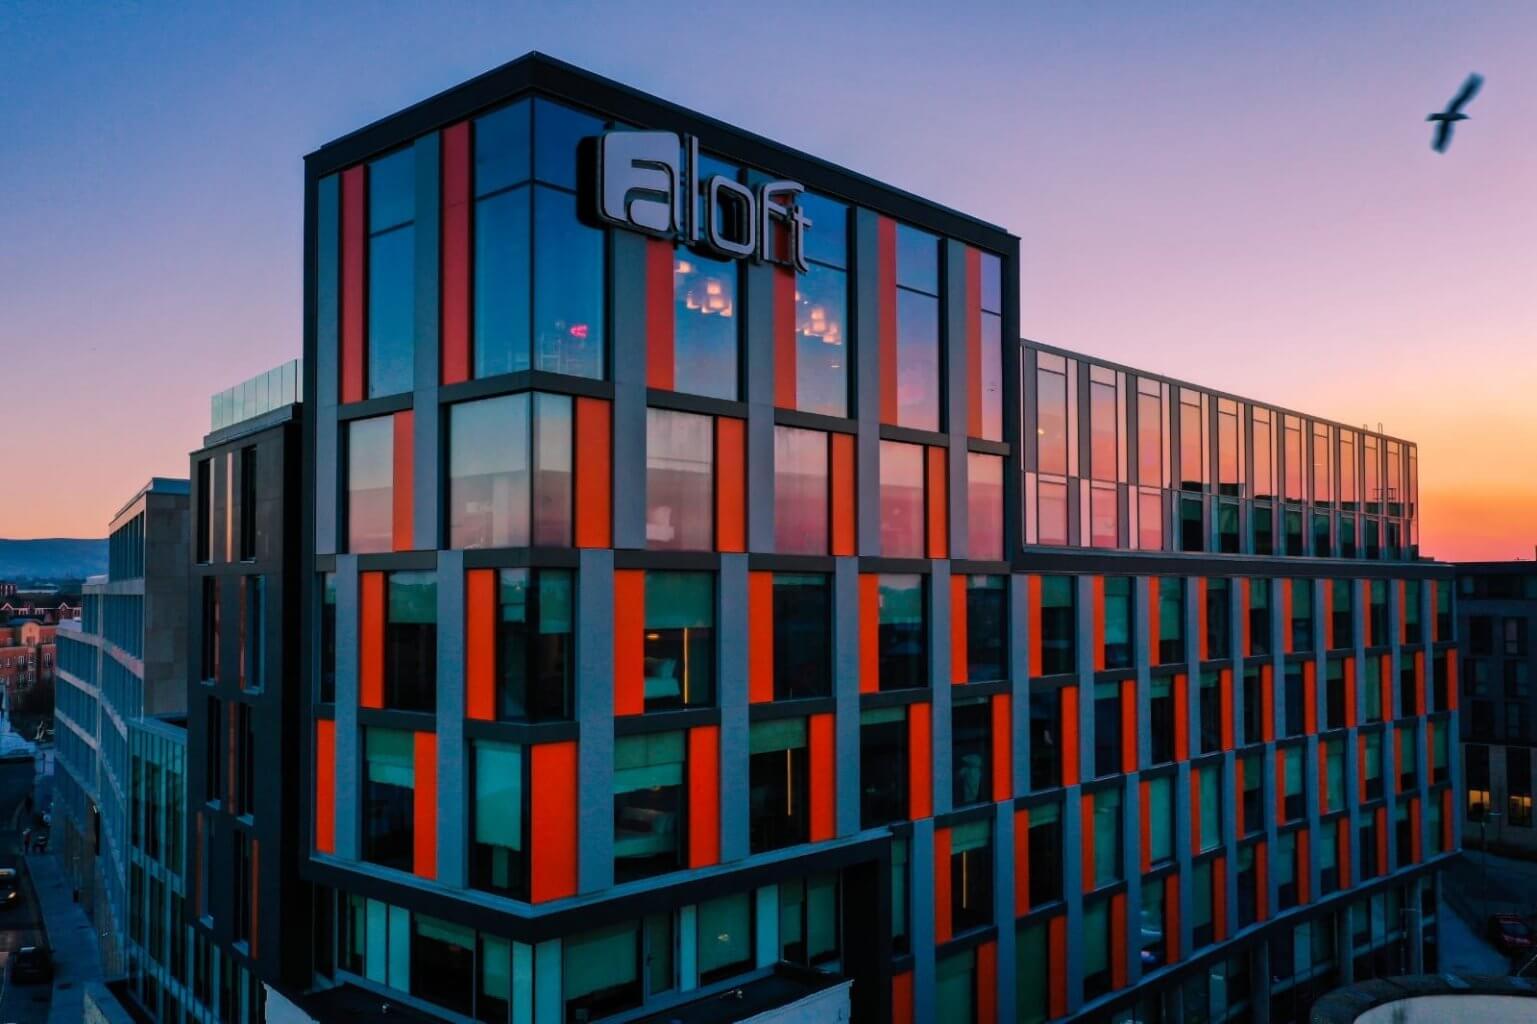 Aloft Hotel Dublin facade design